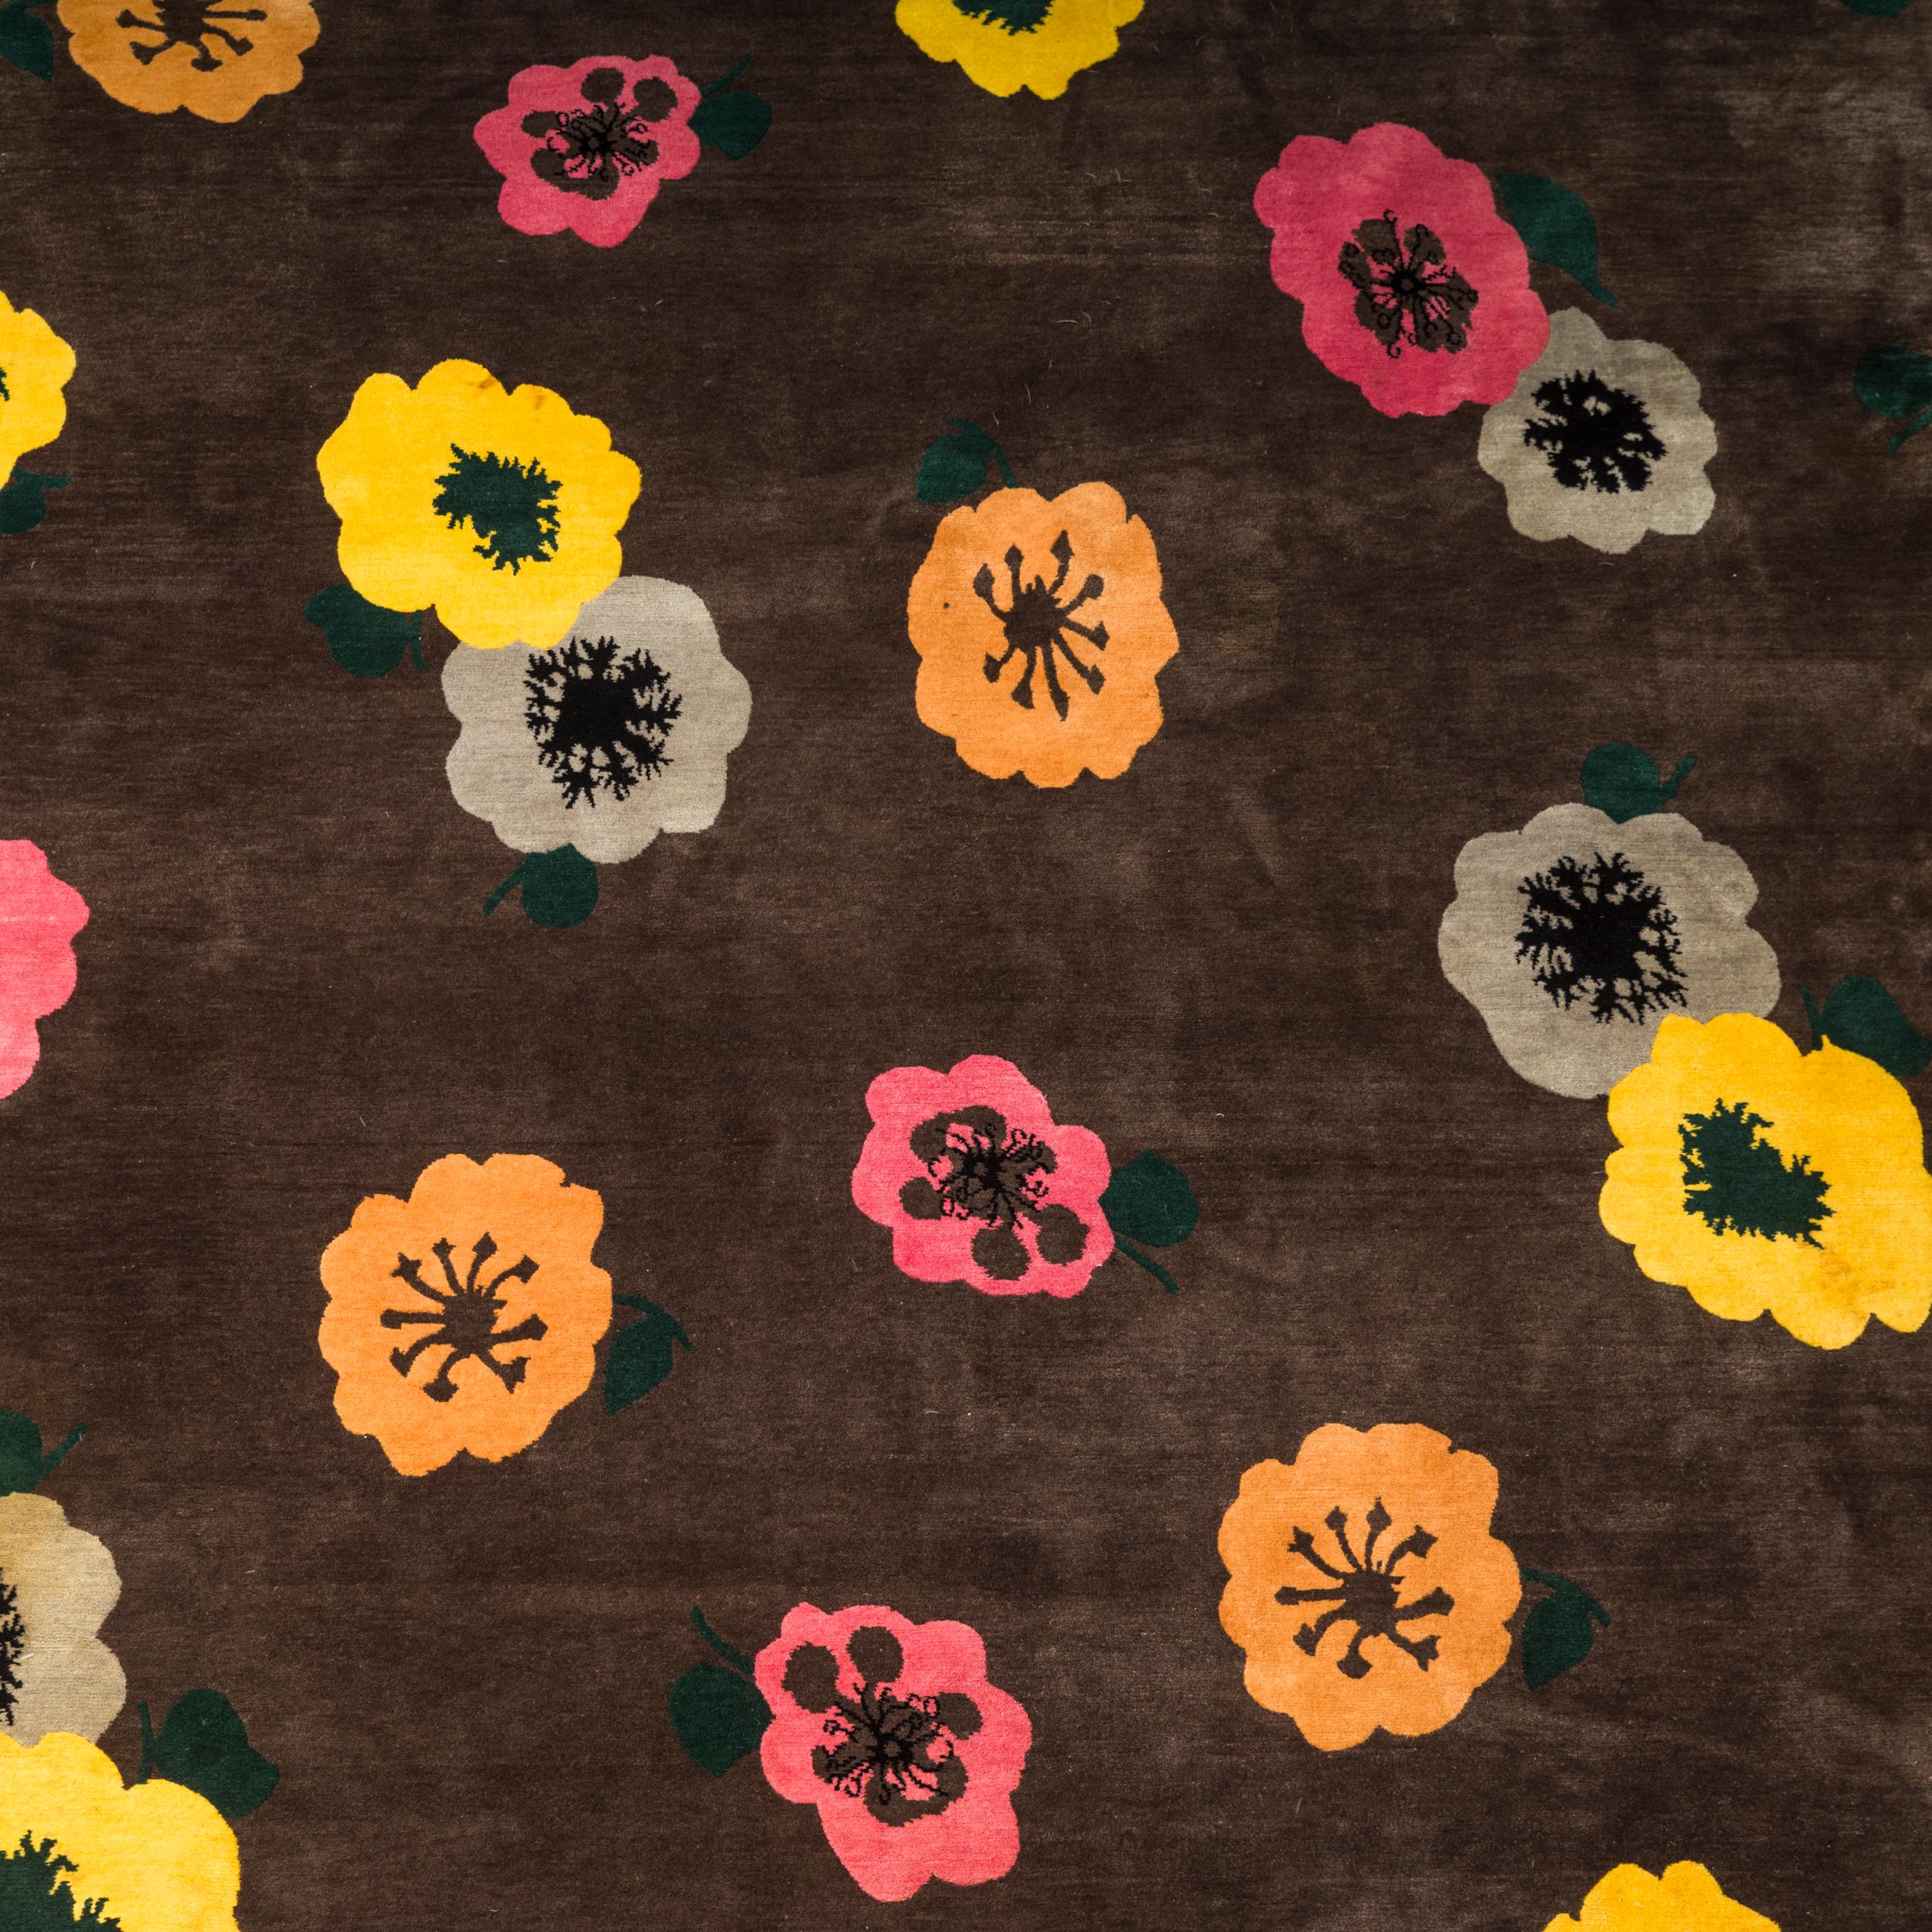 Seit der Eröffnung im Jahr 1997 ist The Rug Company zu einem Synonym für luxuriöses Teppichdesign geworden und bekannt für seine Kollaborationen mit führenden Kreativen, darunter auch Designhäuser und Künstler.

Dieser Teppich Anemone Cocoa war die